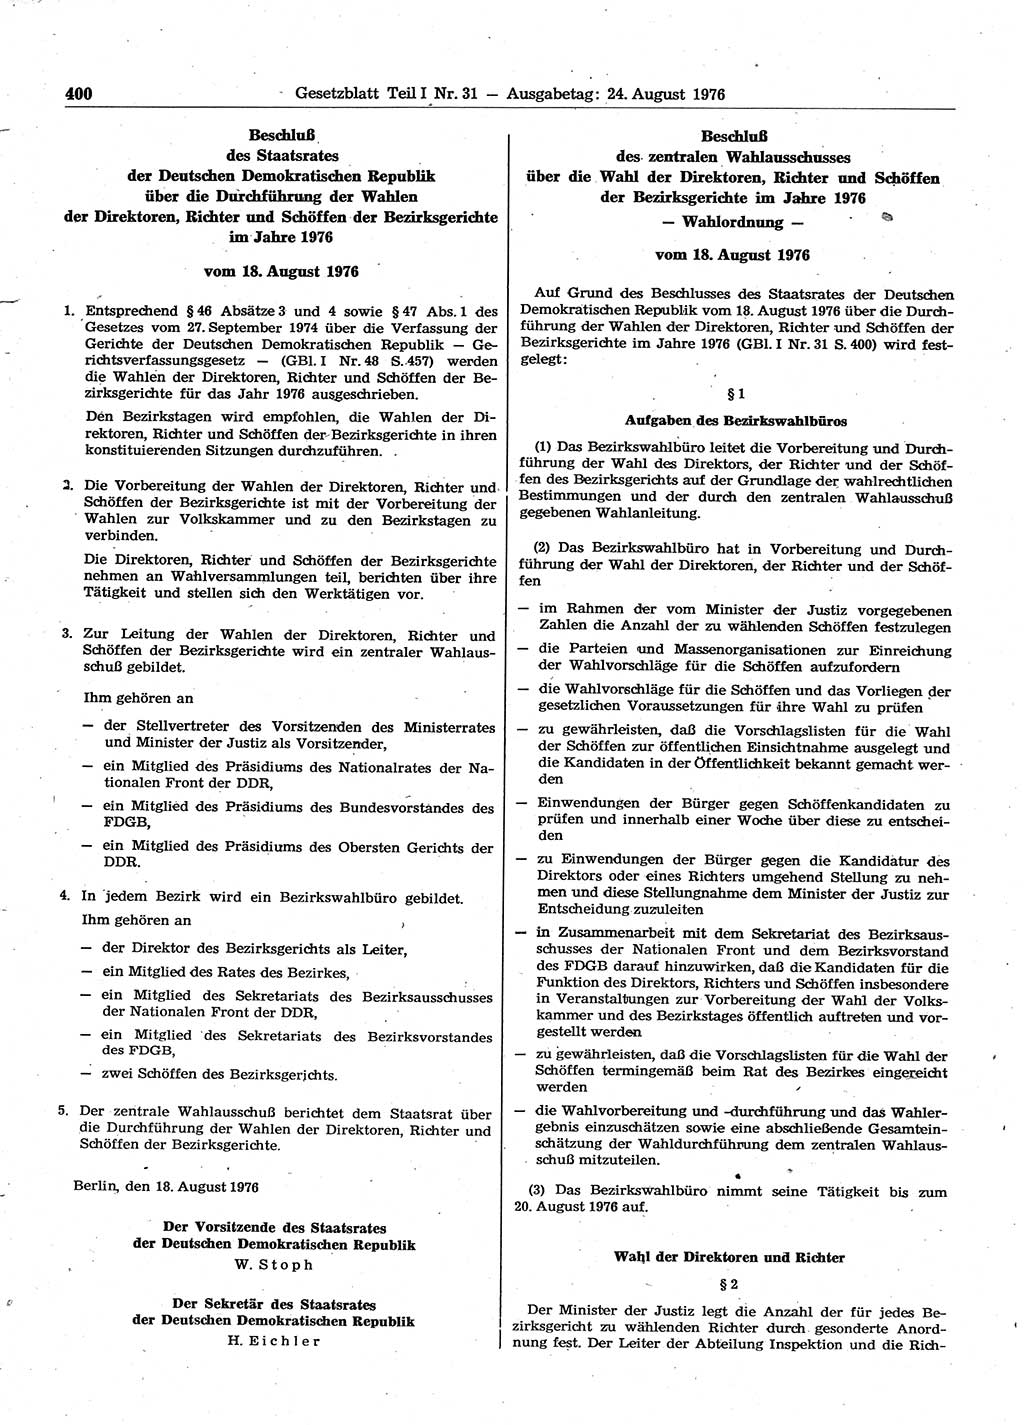 Gesetzblatt (GBl.) der Deutschen Demokratischen Republik (DDR) Teil Ⅰ 1976, Seite 400 (GBl. DDR Ⅰ 1976, S. 400)